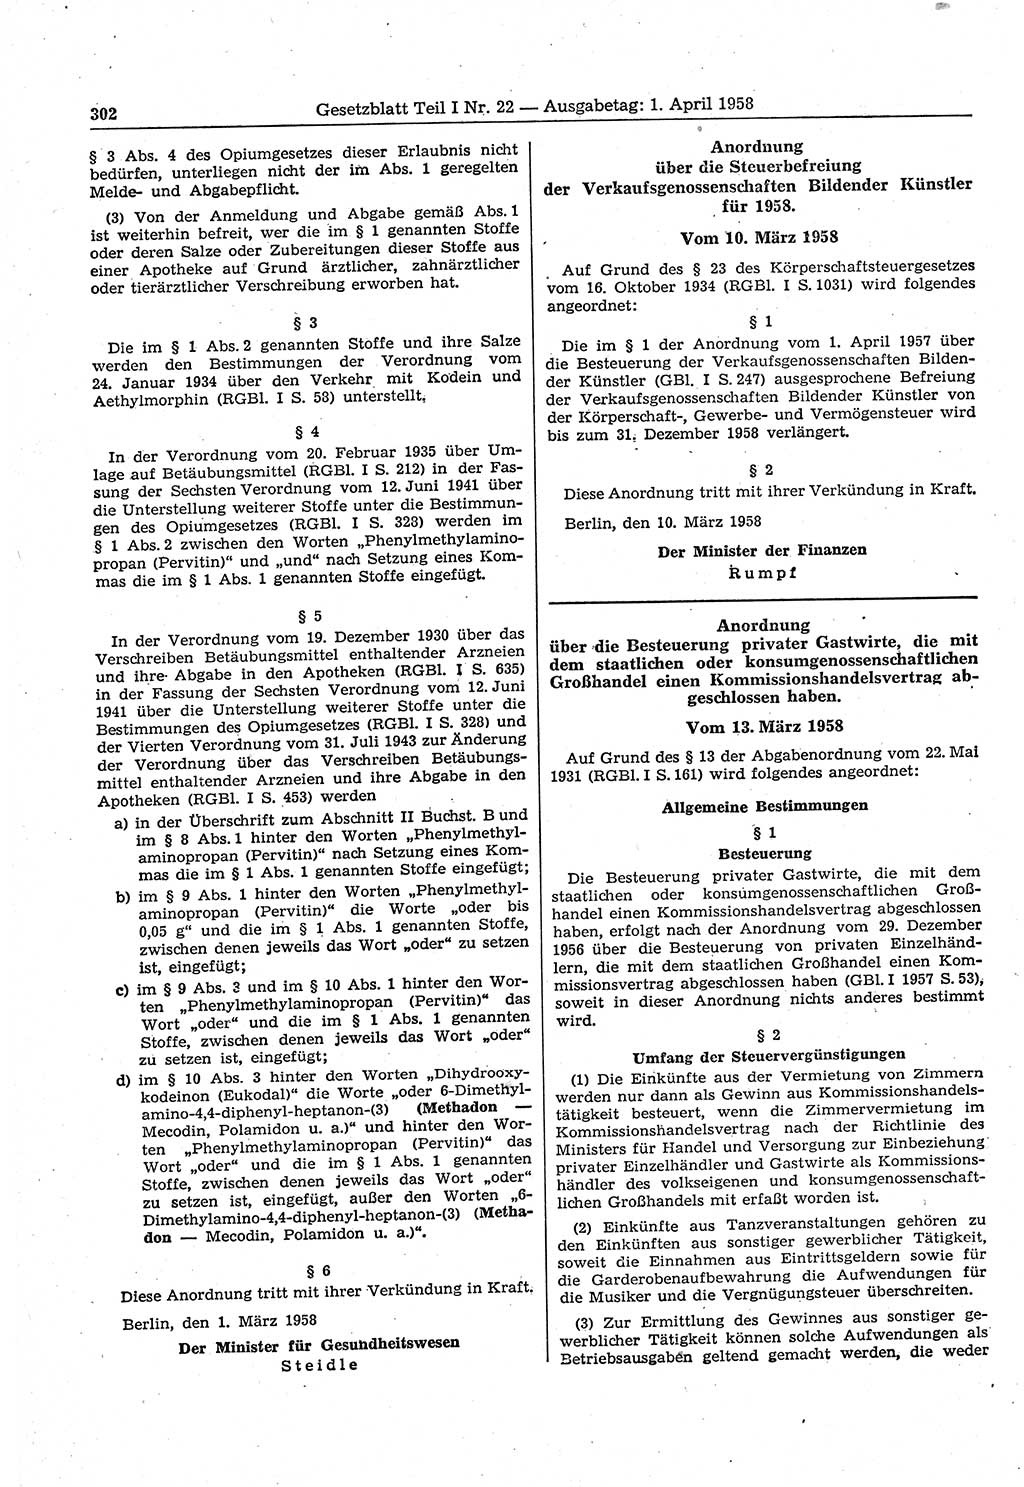 Gesetzblatt (GBl.) der Deutschen Demokratischen Republik (DDR) Teil Ⅰ 1958, Seite 302 (GBl. DDR Ⅰ 1958, S. 302)